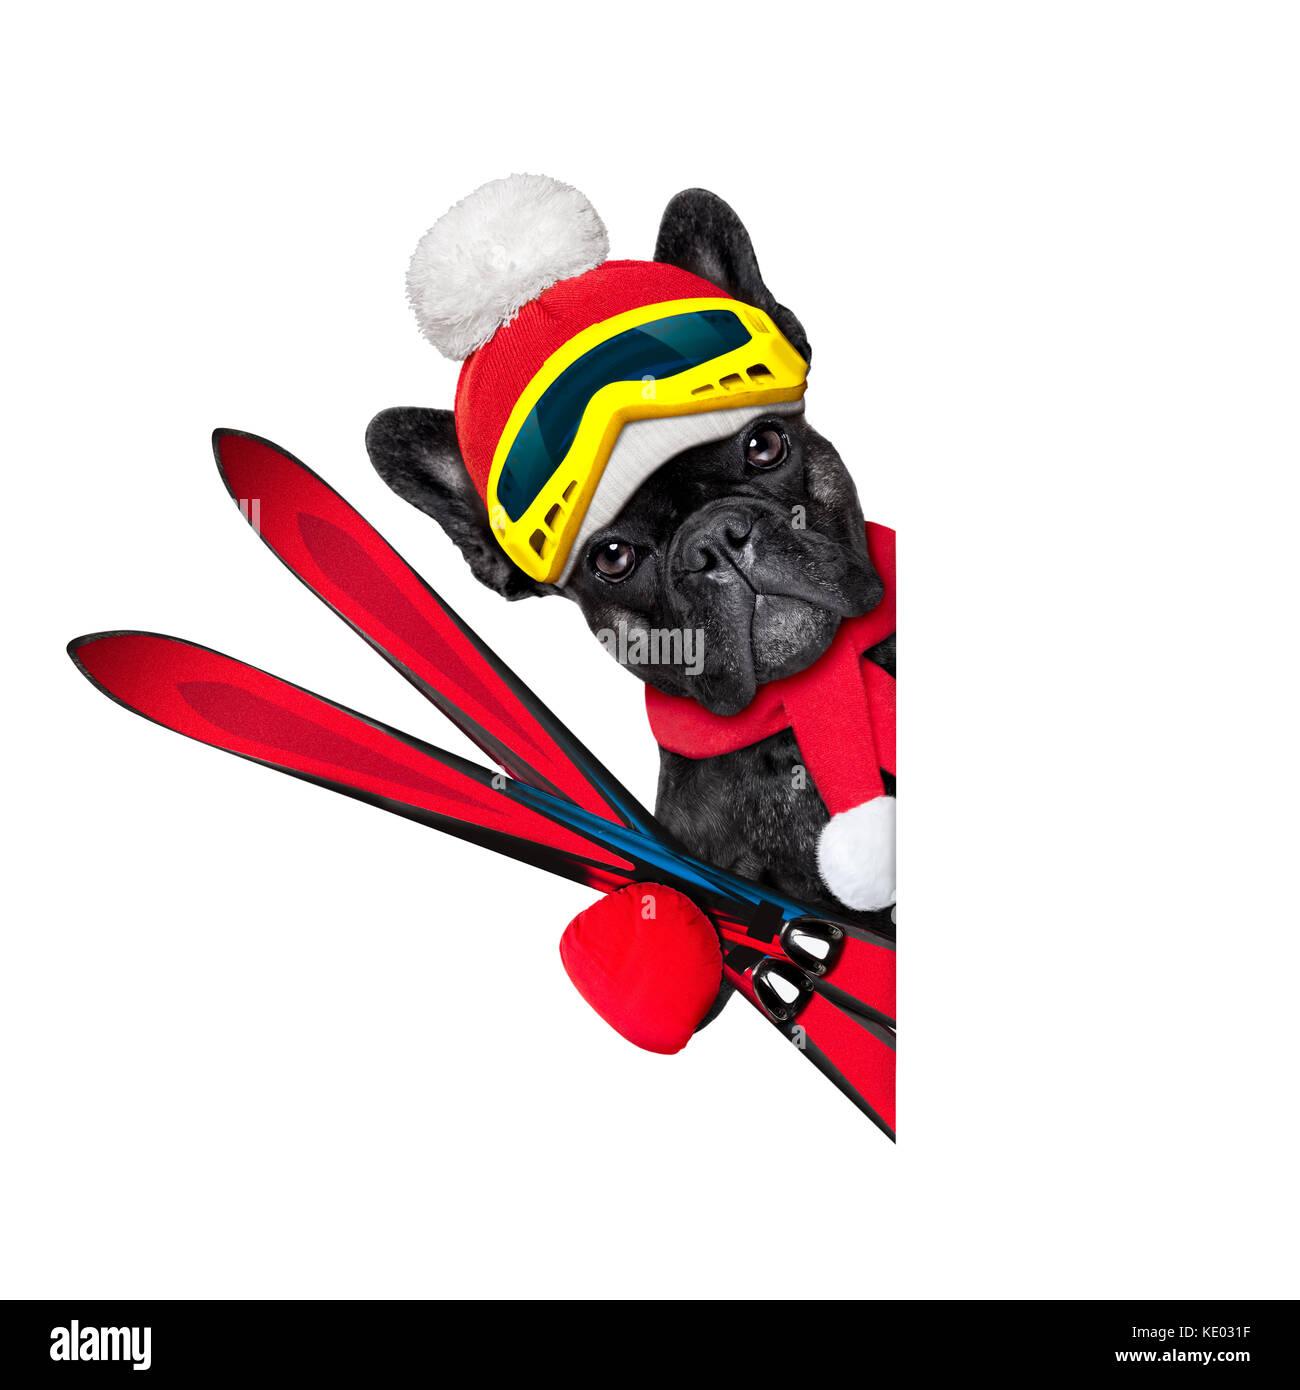 Französische Bulldogge Hund mit Skiausrüstung, das Tragen von Schutzbrille, Handschuhe, einen Hut und ein roter Schal, neben einem weißen leeren Banner oder Plakat, auf Rückseite weiß, isoliert Stockfoto